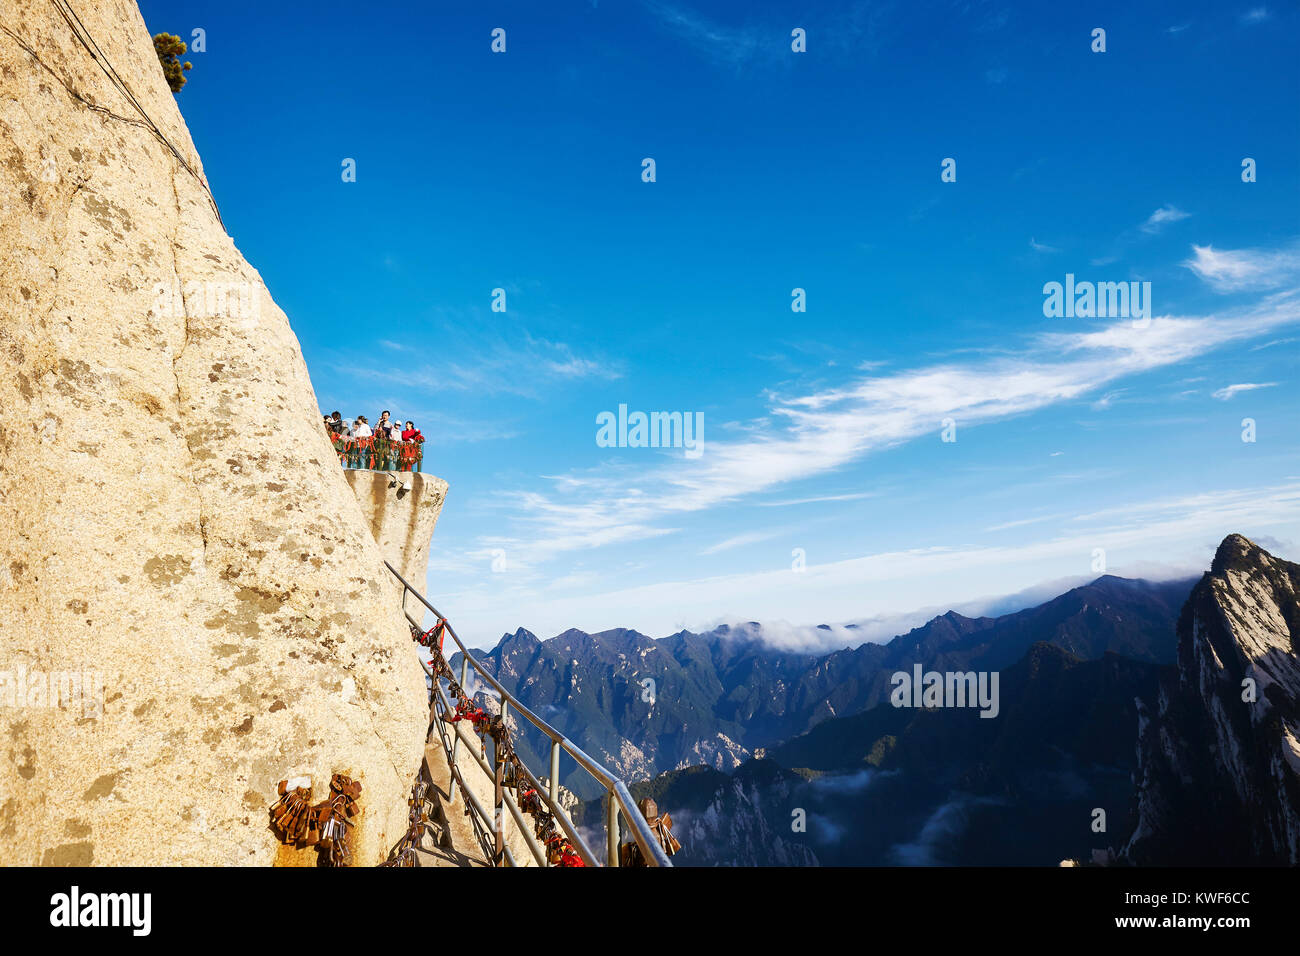 Mount Hua, Provinz Shaanxi, China - Oktober 6, 2017: Touristen auf einem Aussichtspunkt oberhalb der Plank Road in den Himmel, Welten die meisten gefährlichen Wanderung. Stockfoto